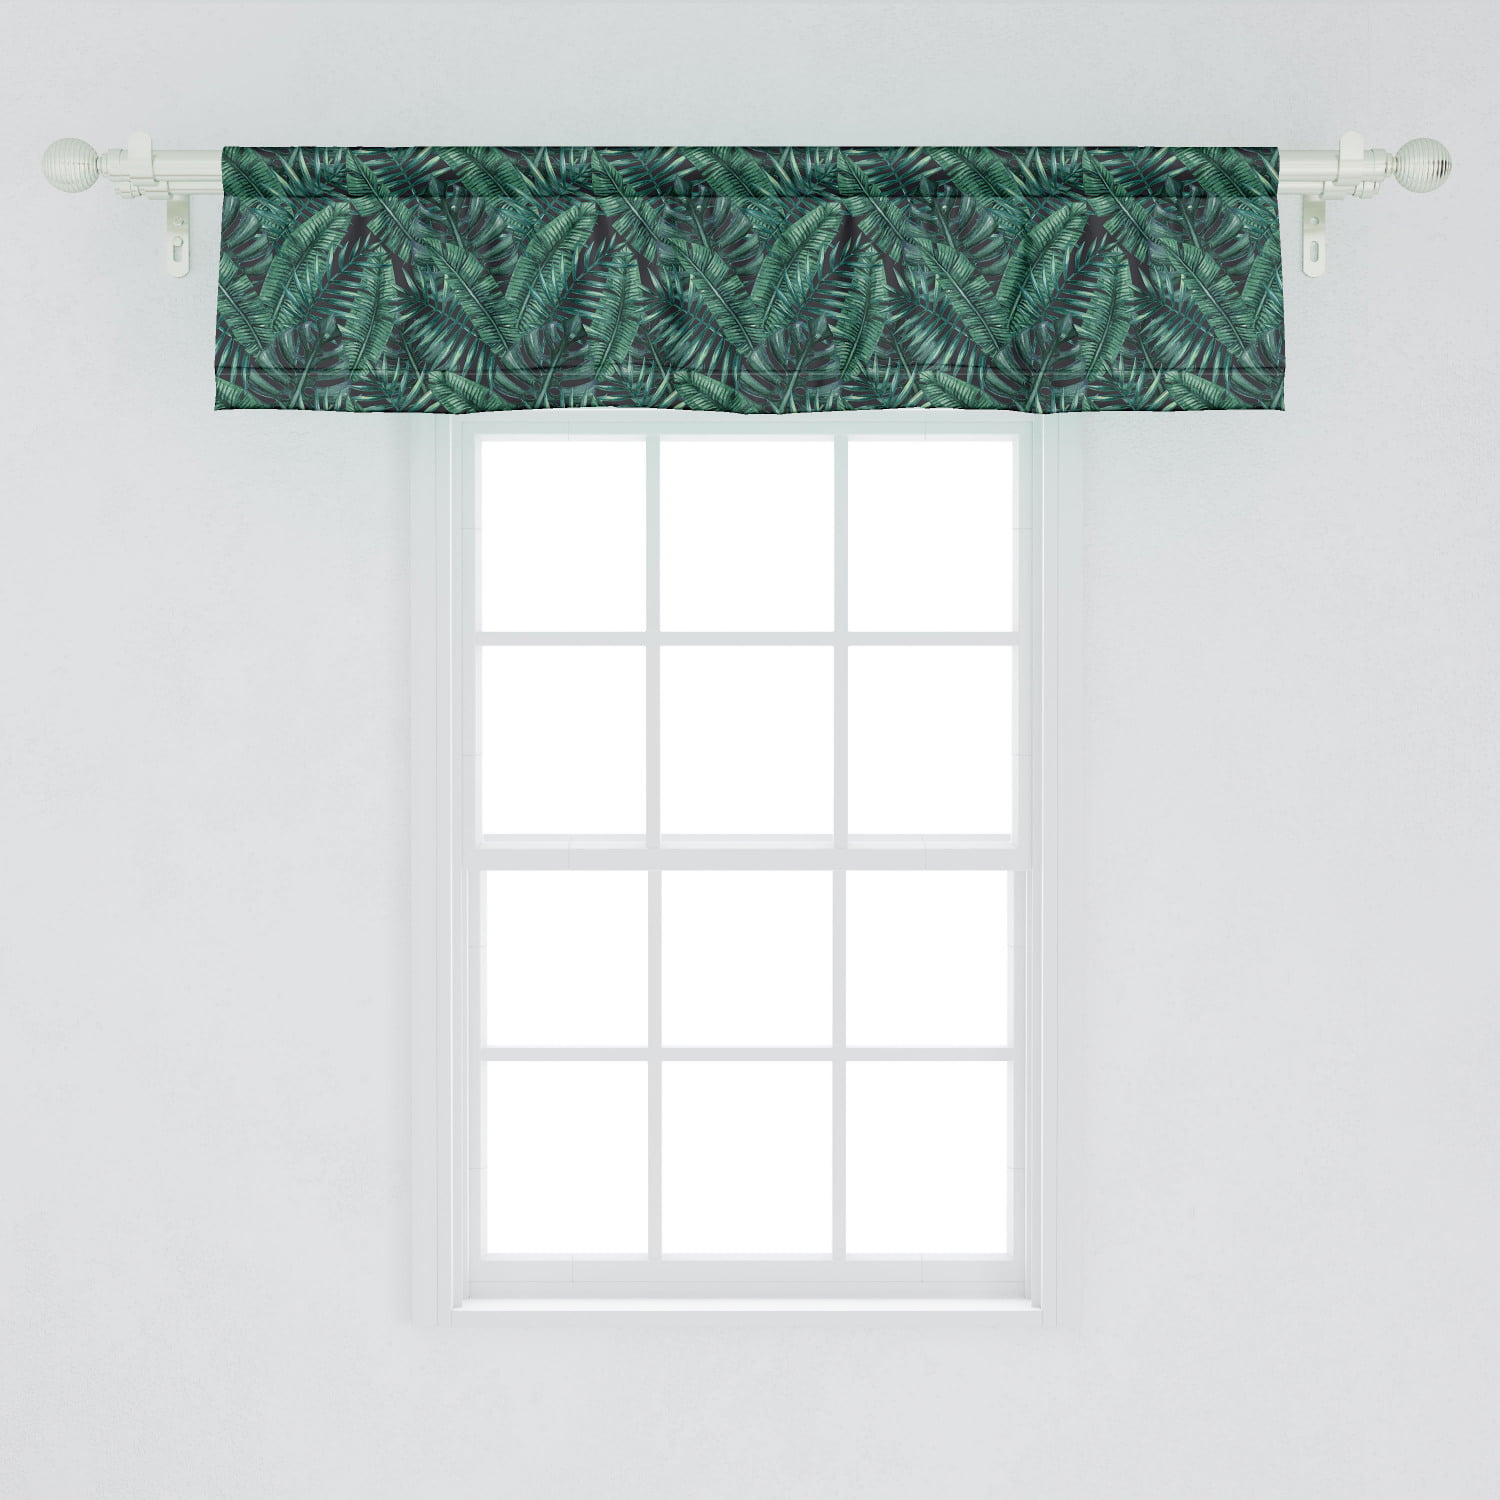 OWLS tapestry window VALANCE 15" x 54"L 